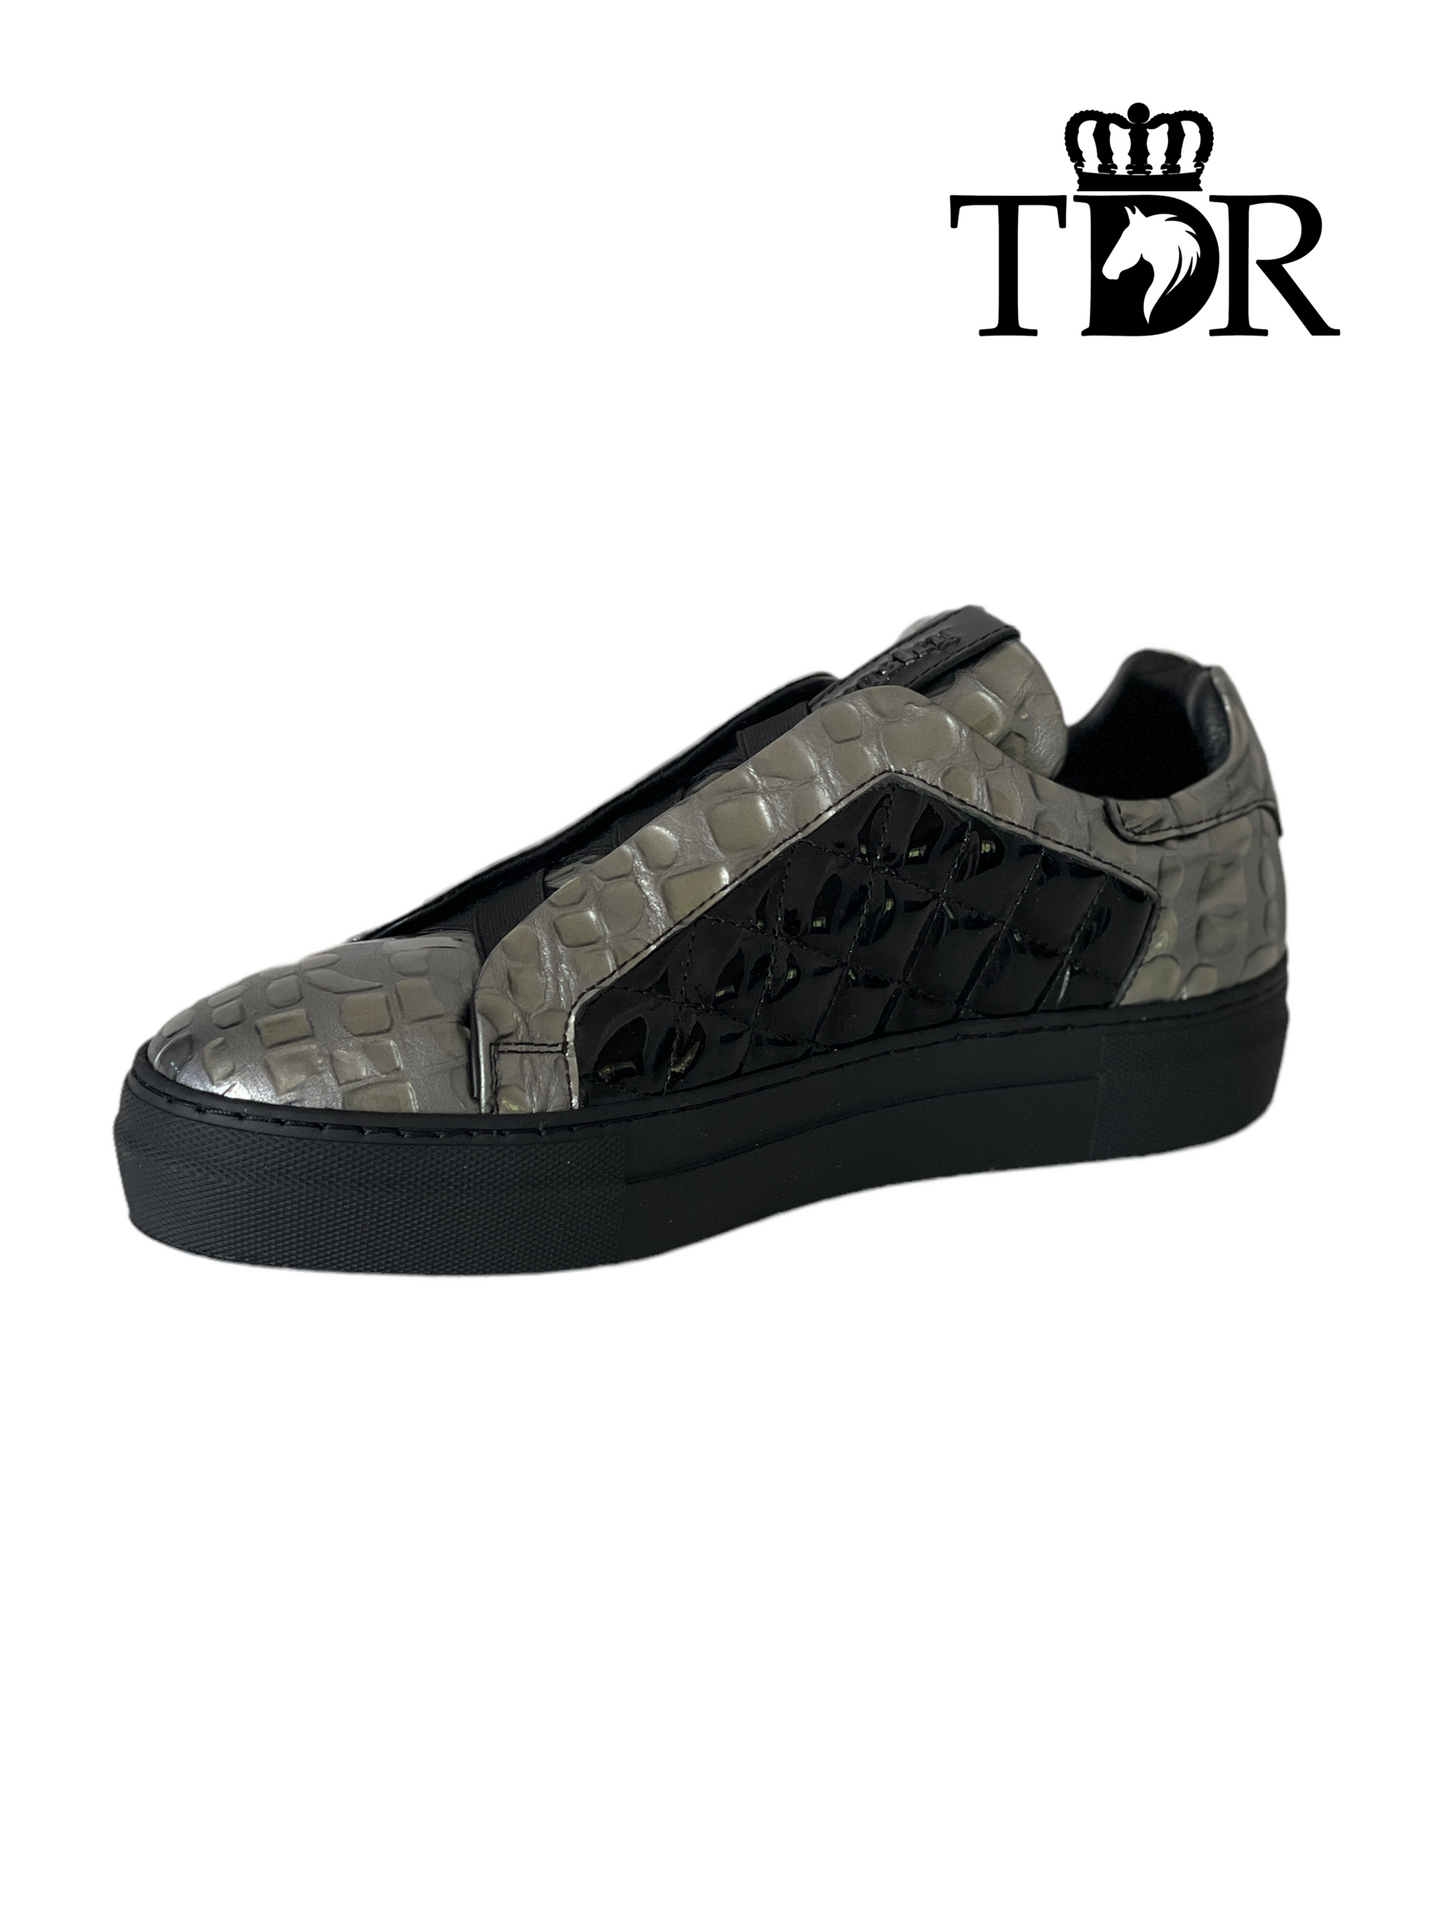 Kingsley Cross Sneaker Grey and Black (38)